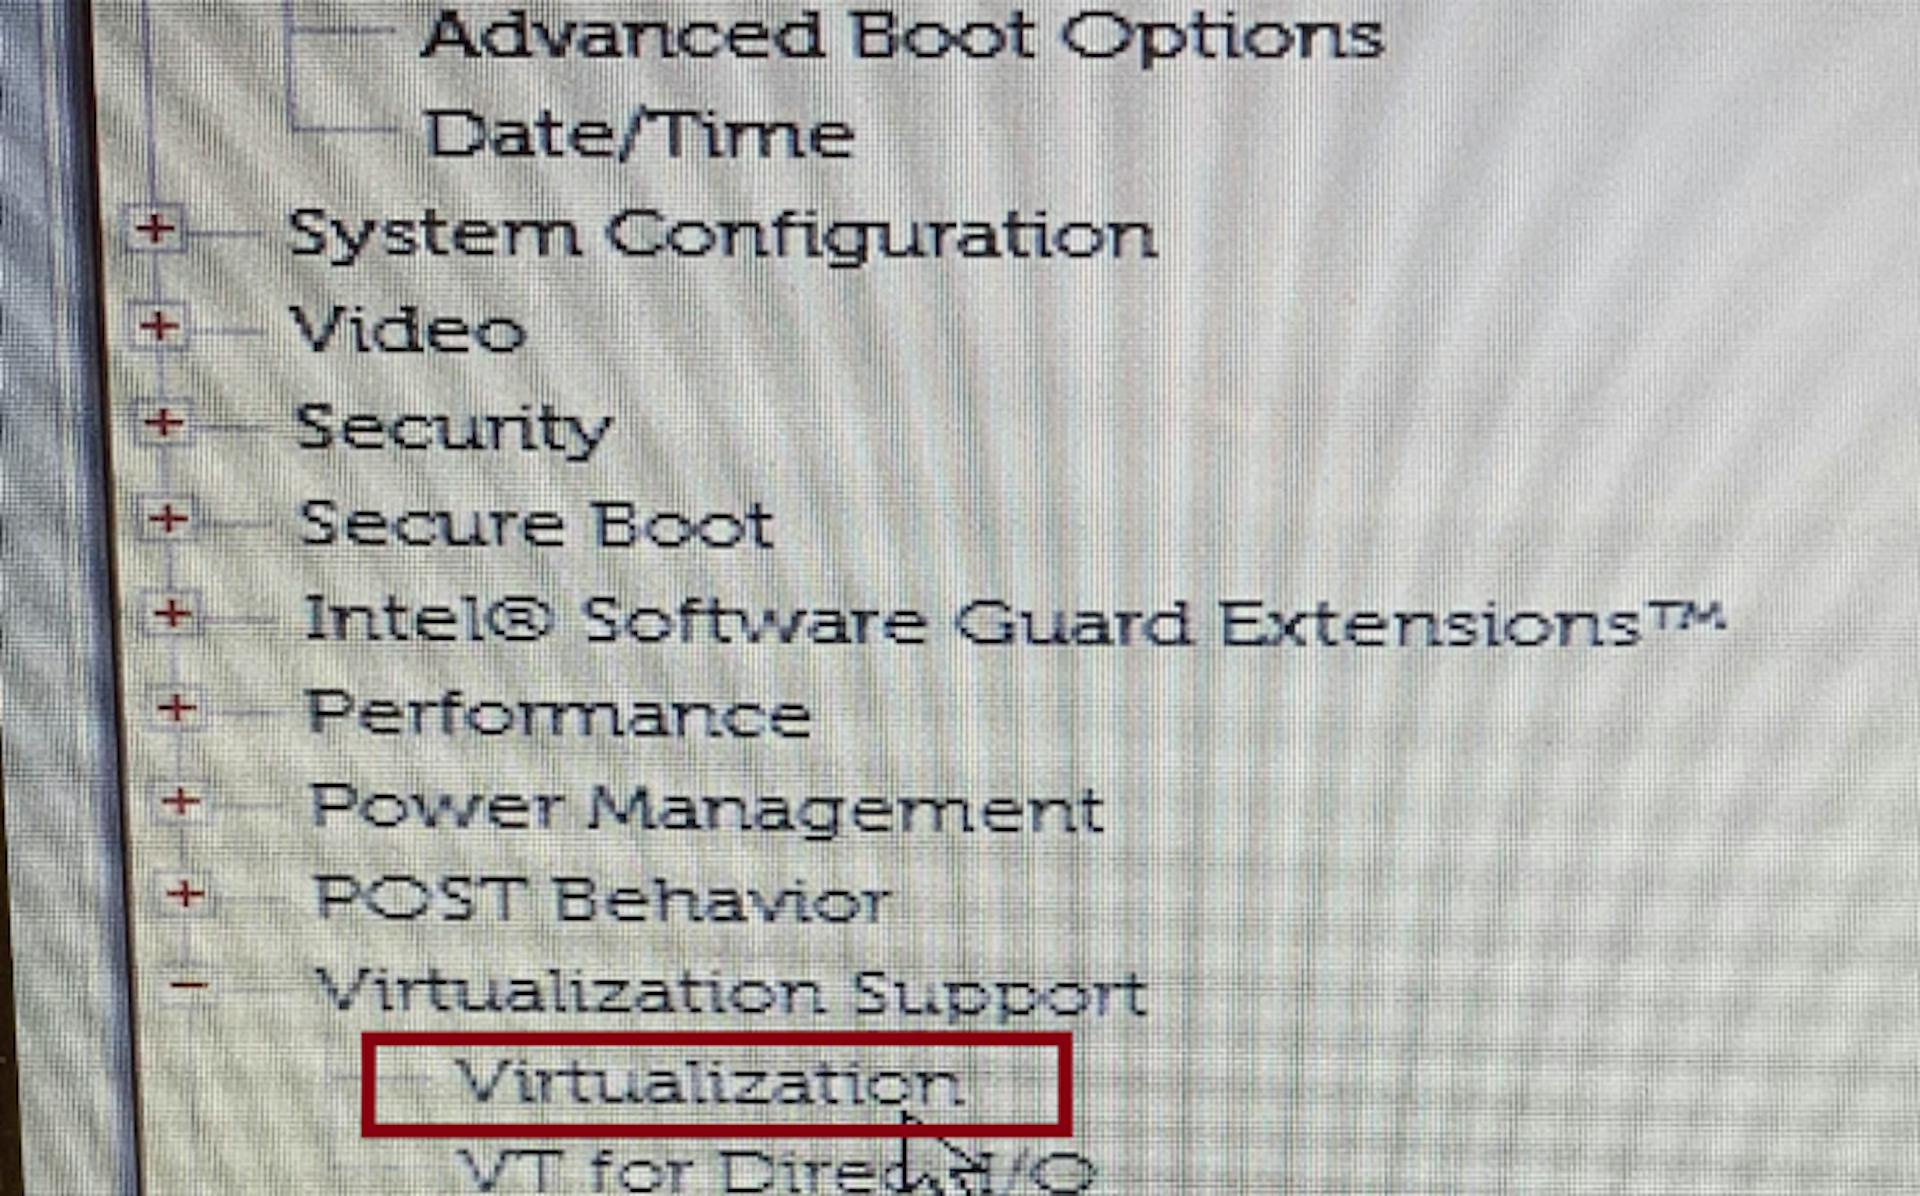 Selecting Virtualization